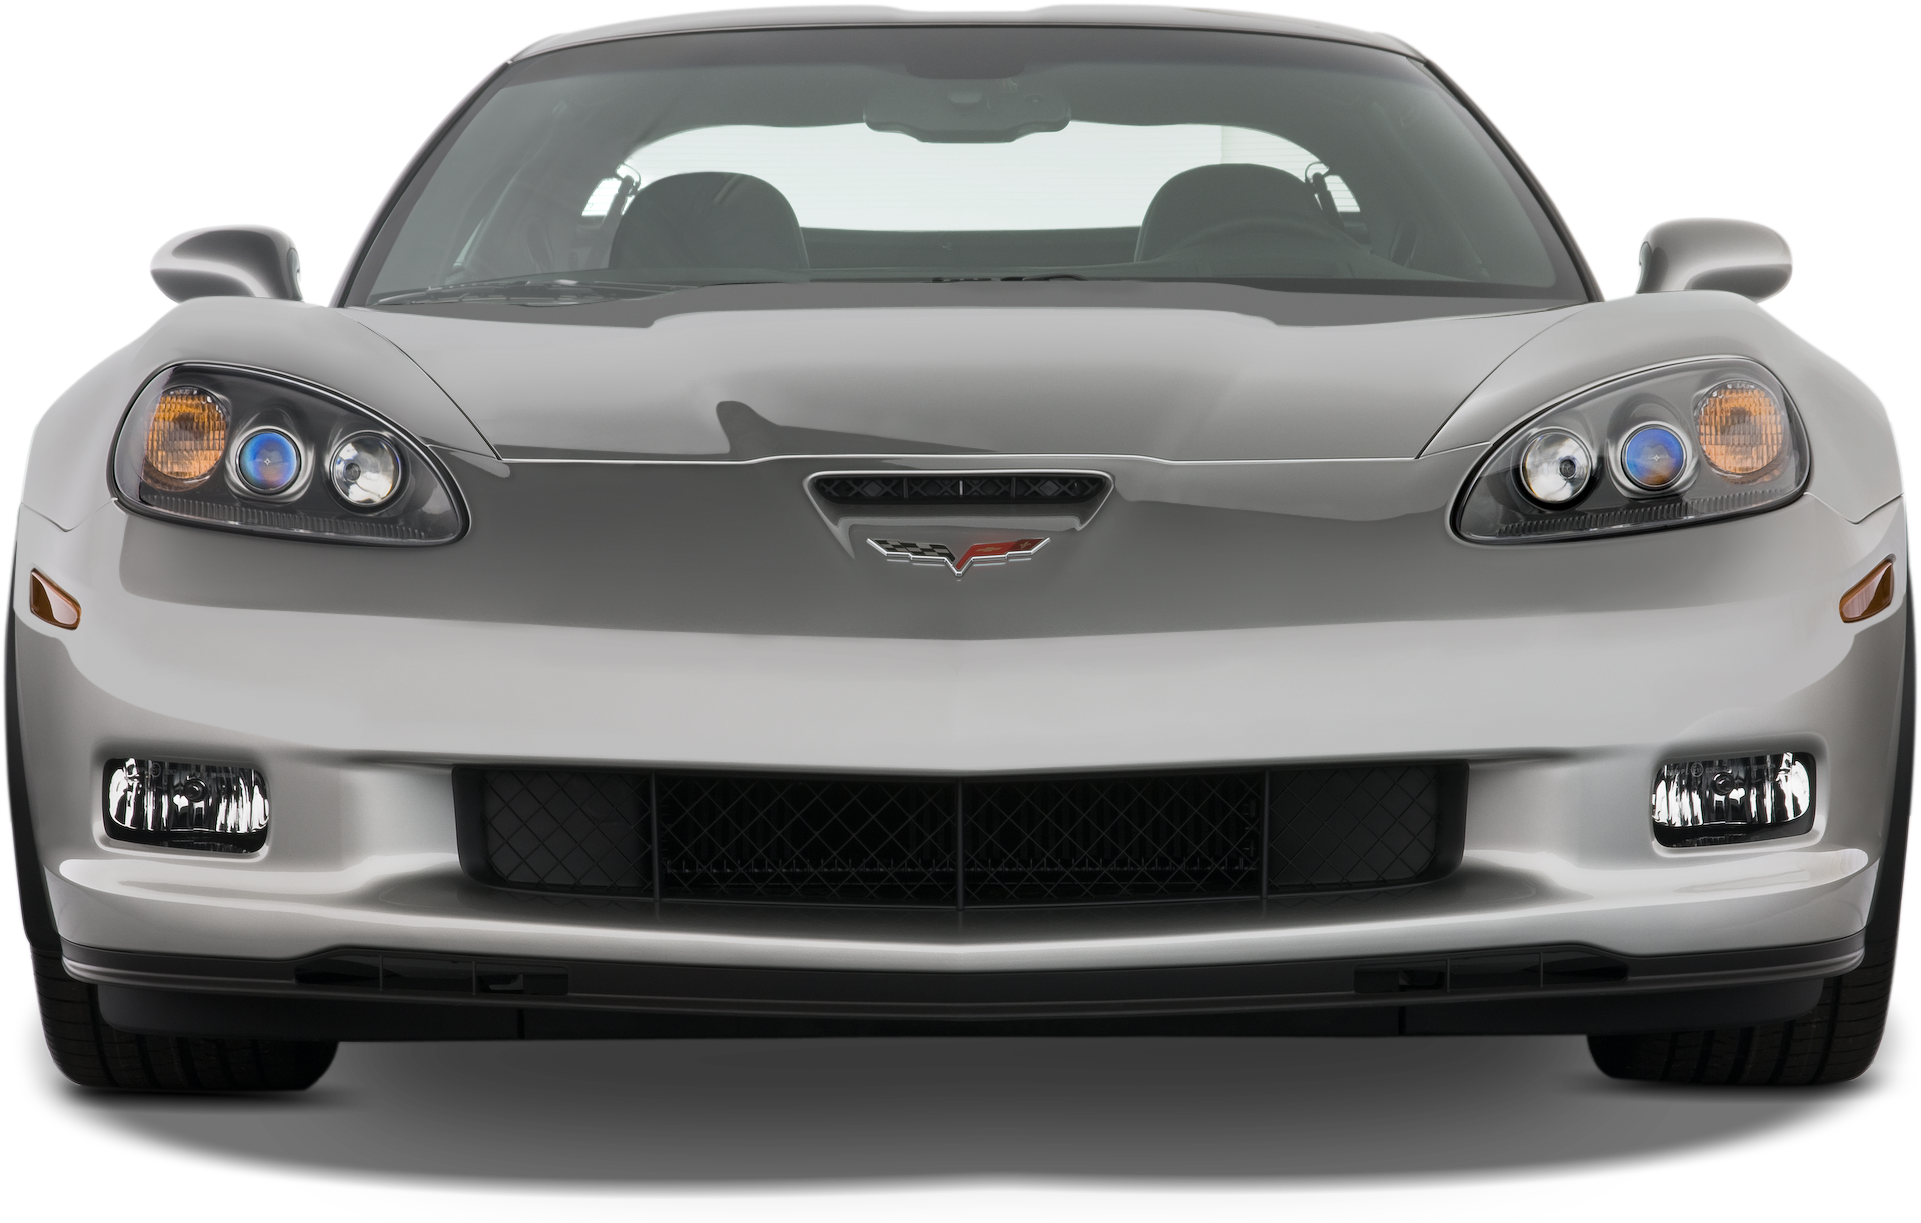 Chevrolet Corvette Png Image - 55 Corvette Front View Clipart (2048x1360), Png Download